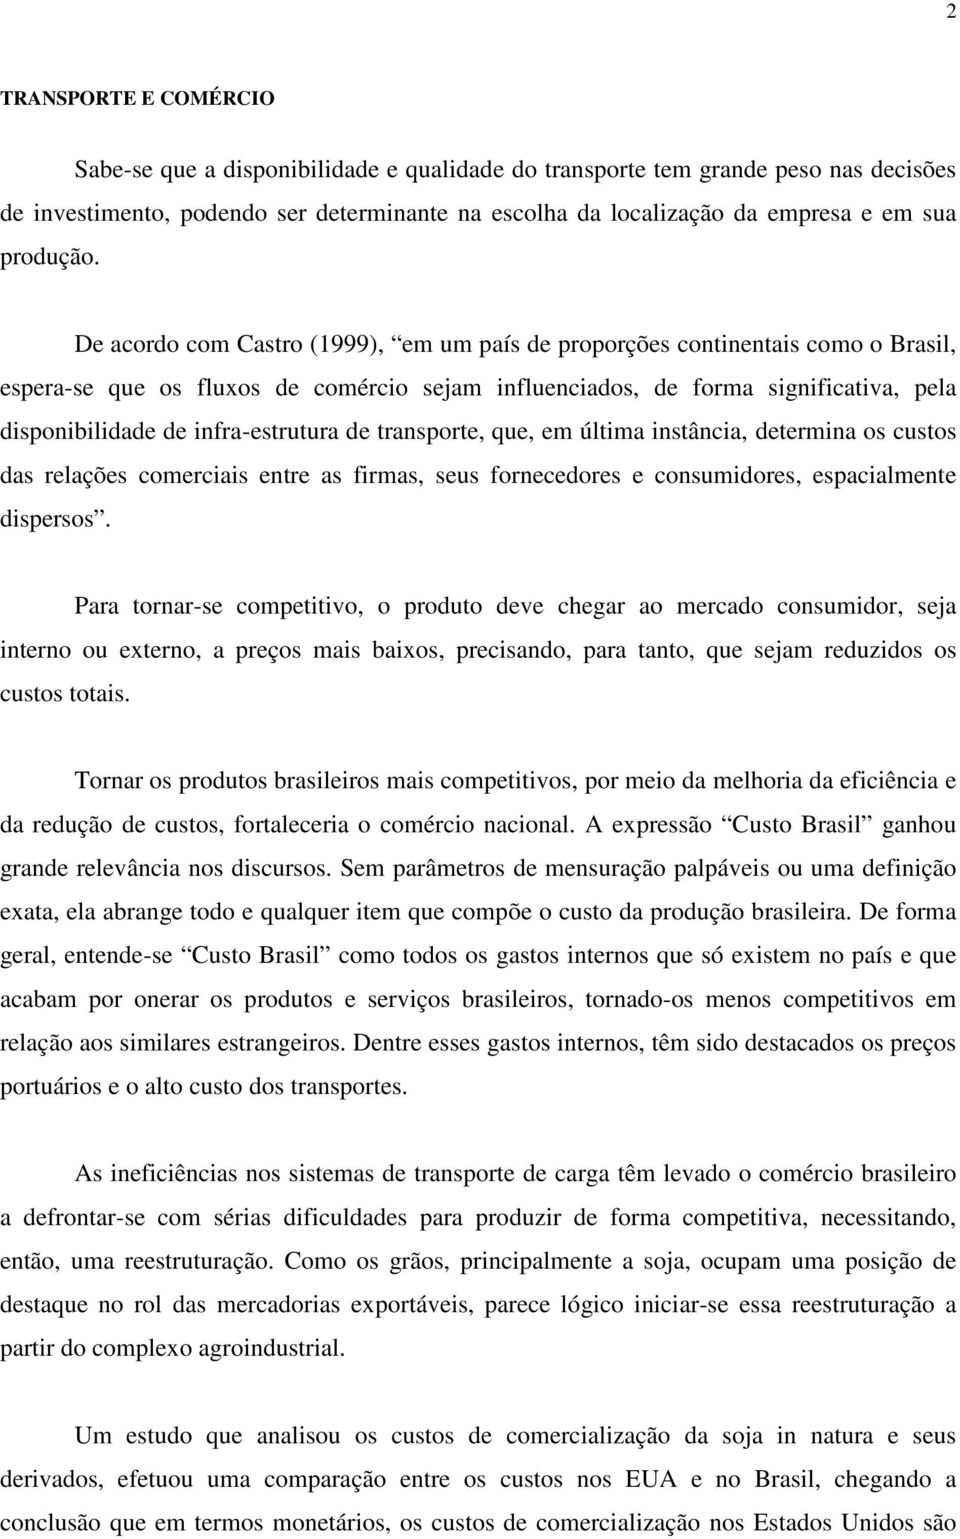 De acordo com Castro (1999), em um país de proporções continentais como o Brasil, espera-se que os fluxos de comércio sejam influenciados, de forma significativa, pela disponibilidade de